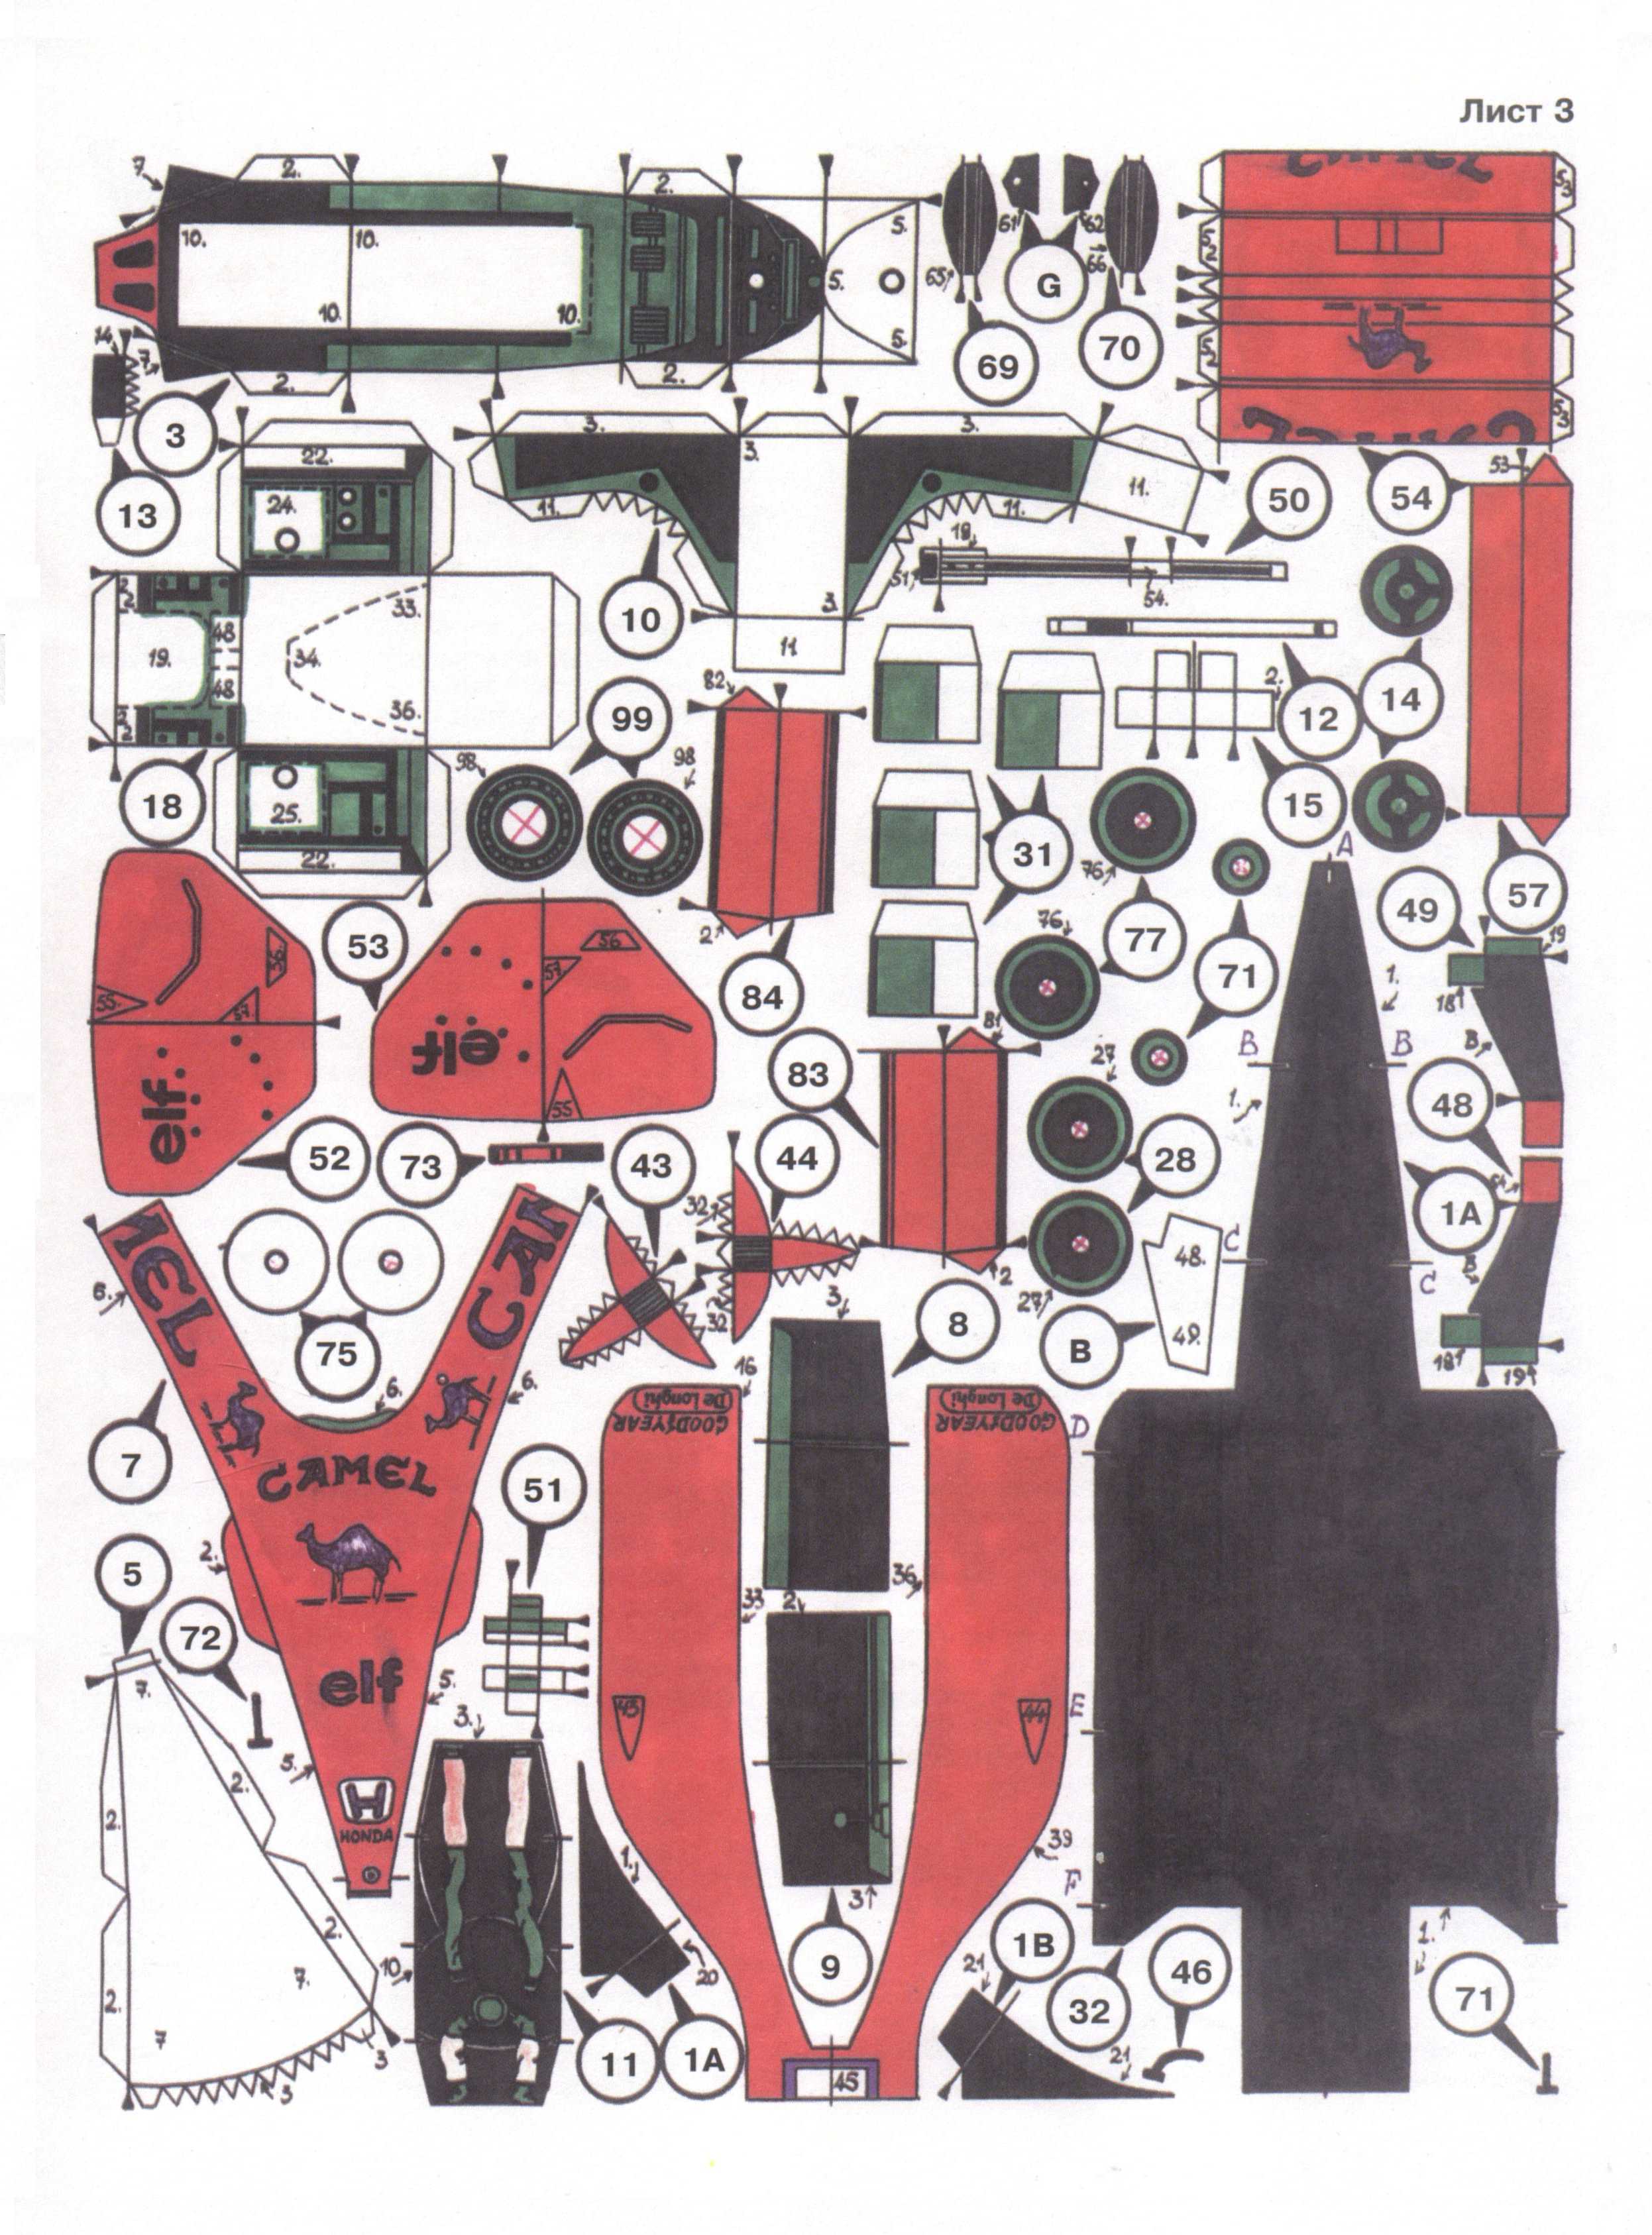 "Левша" 2, 2000, лист 3.